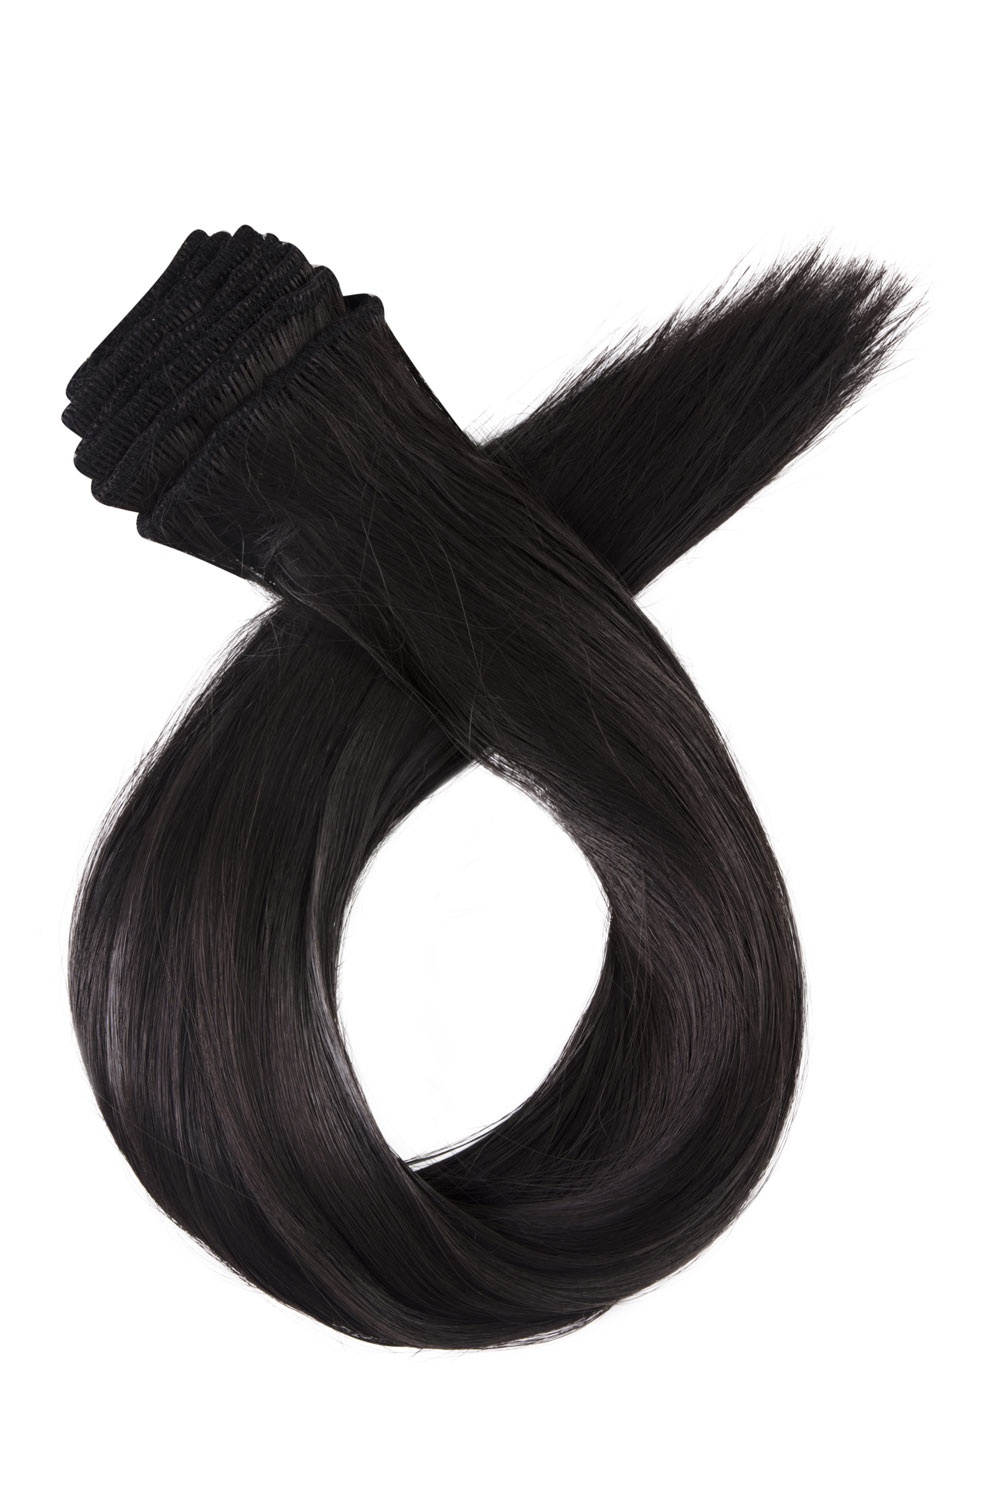 Stredne hnedé jednopásové vlasy, rovné, 50cm, 115g, farba 4